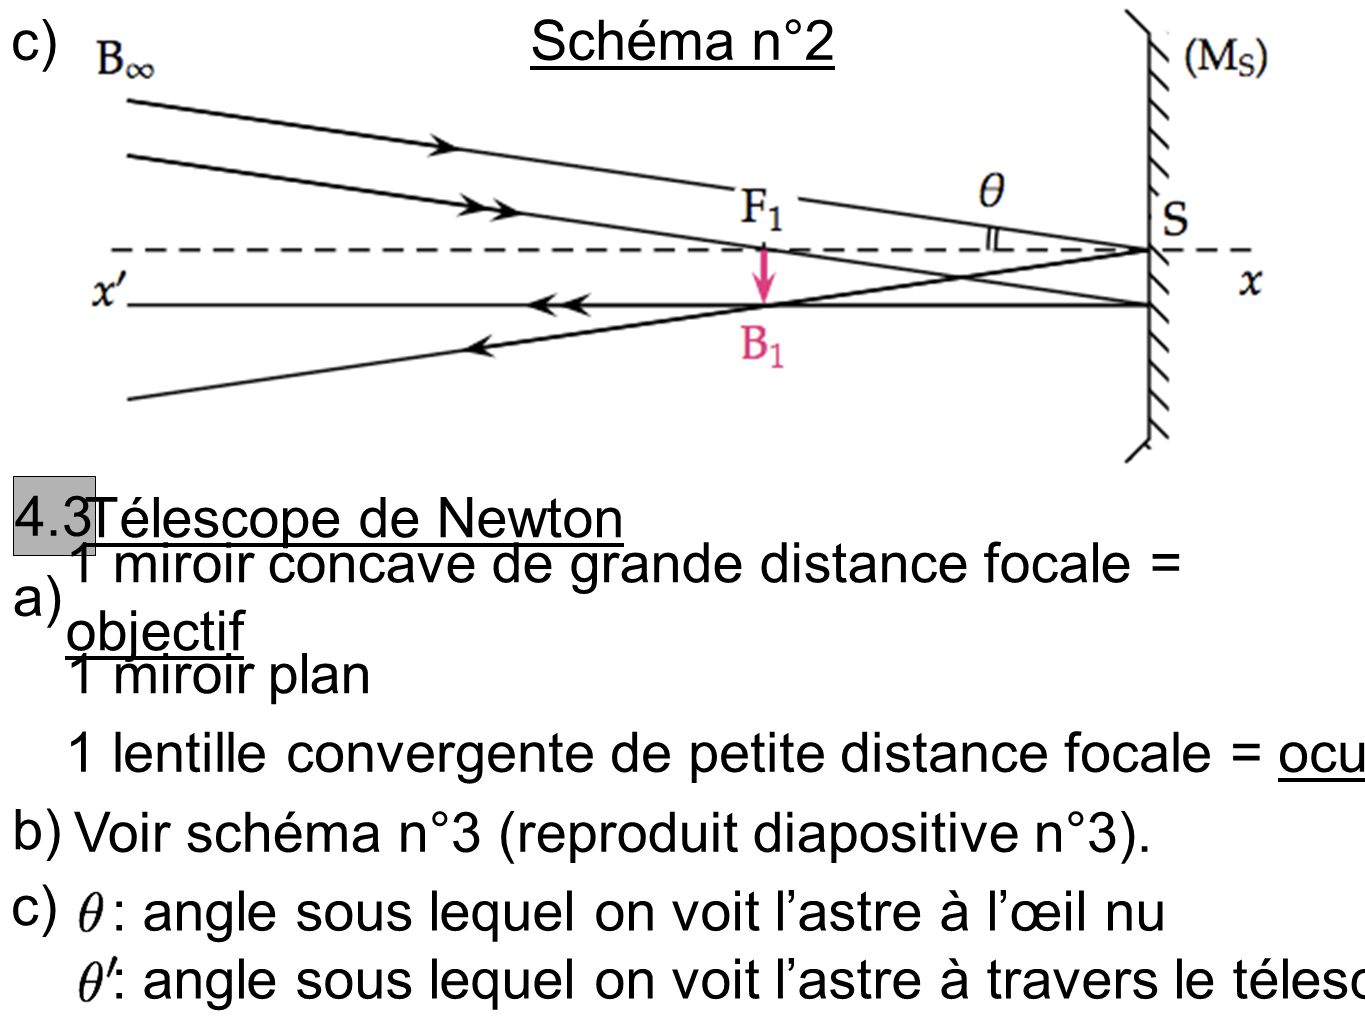 c) Schéma n° Télescope de Newton. a) 1 miroir concave de grande distance focale = objectif.